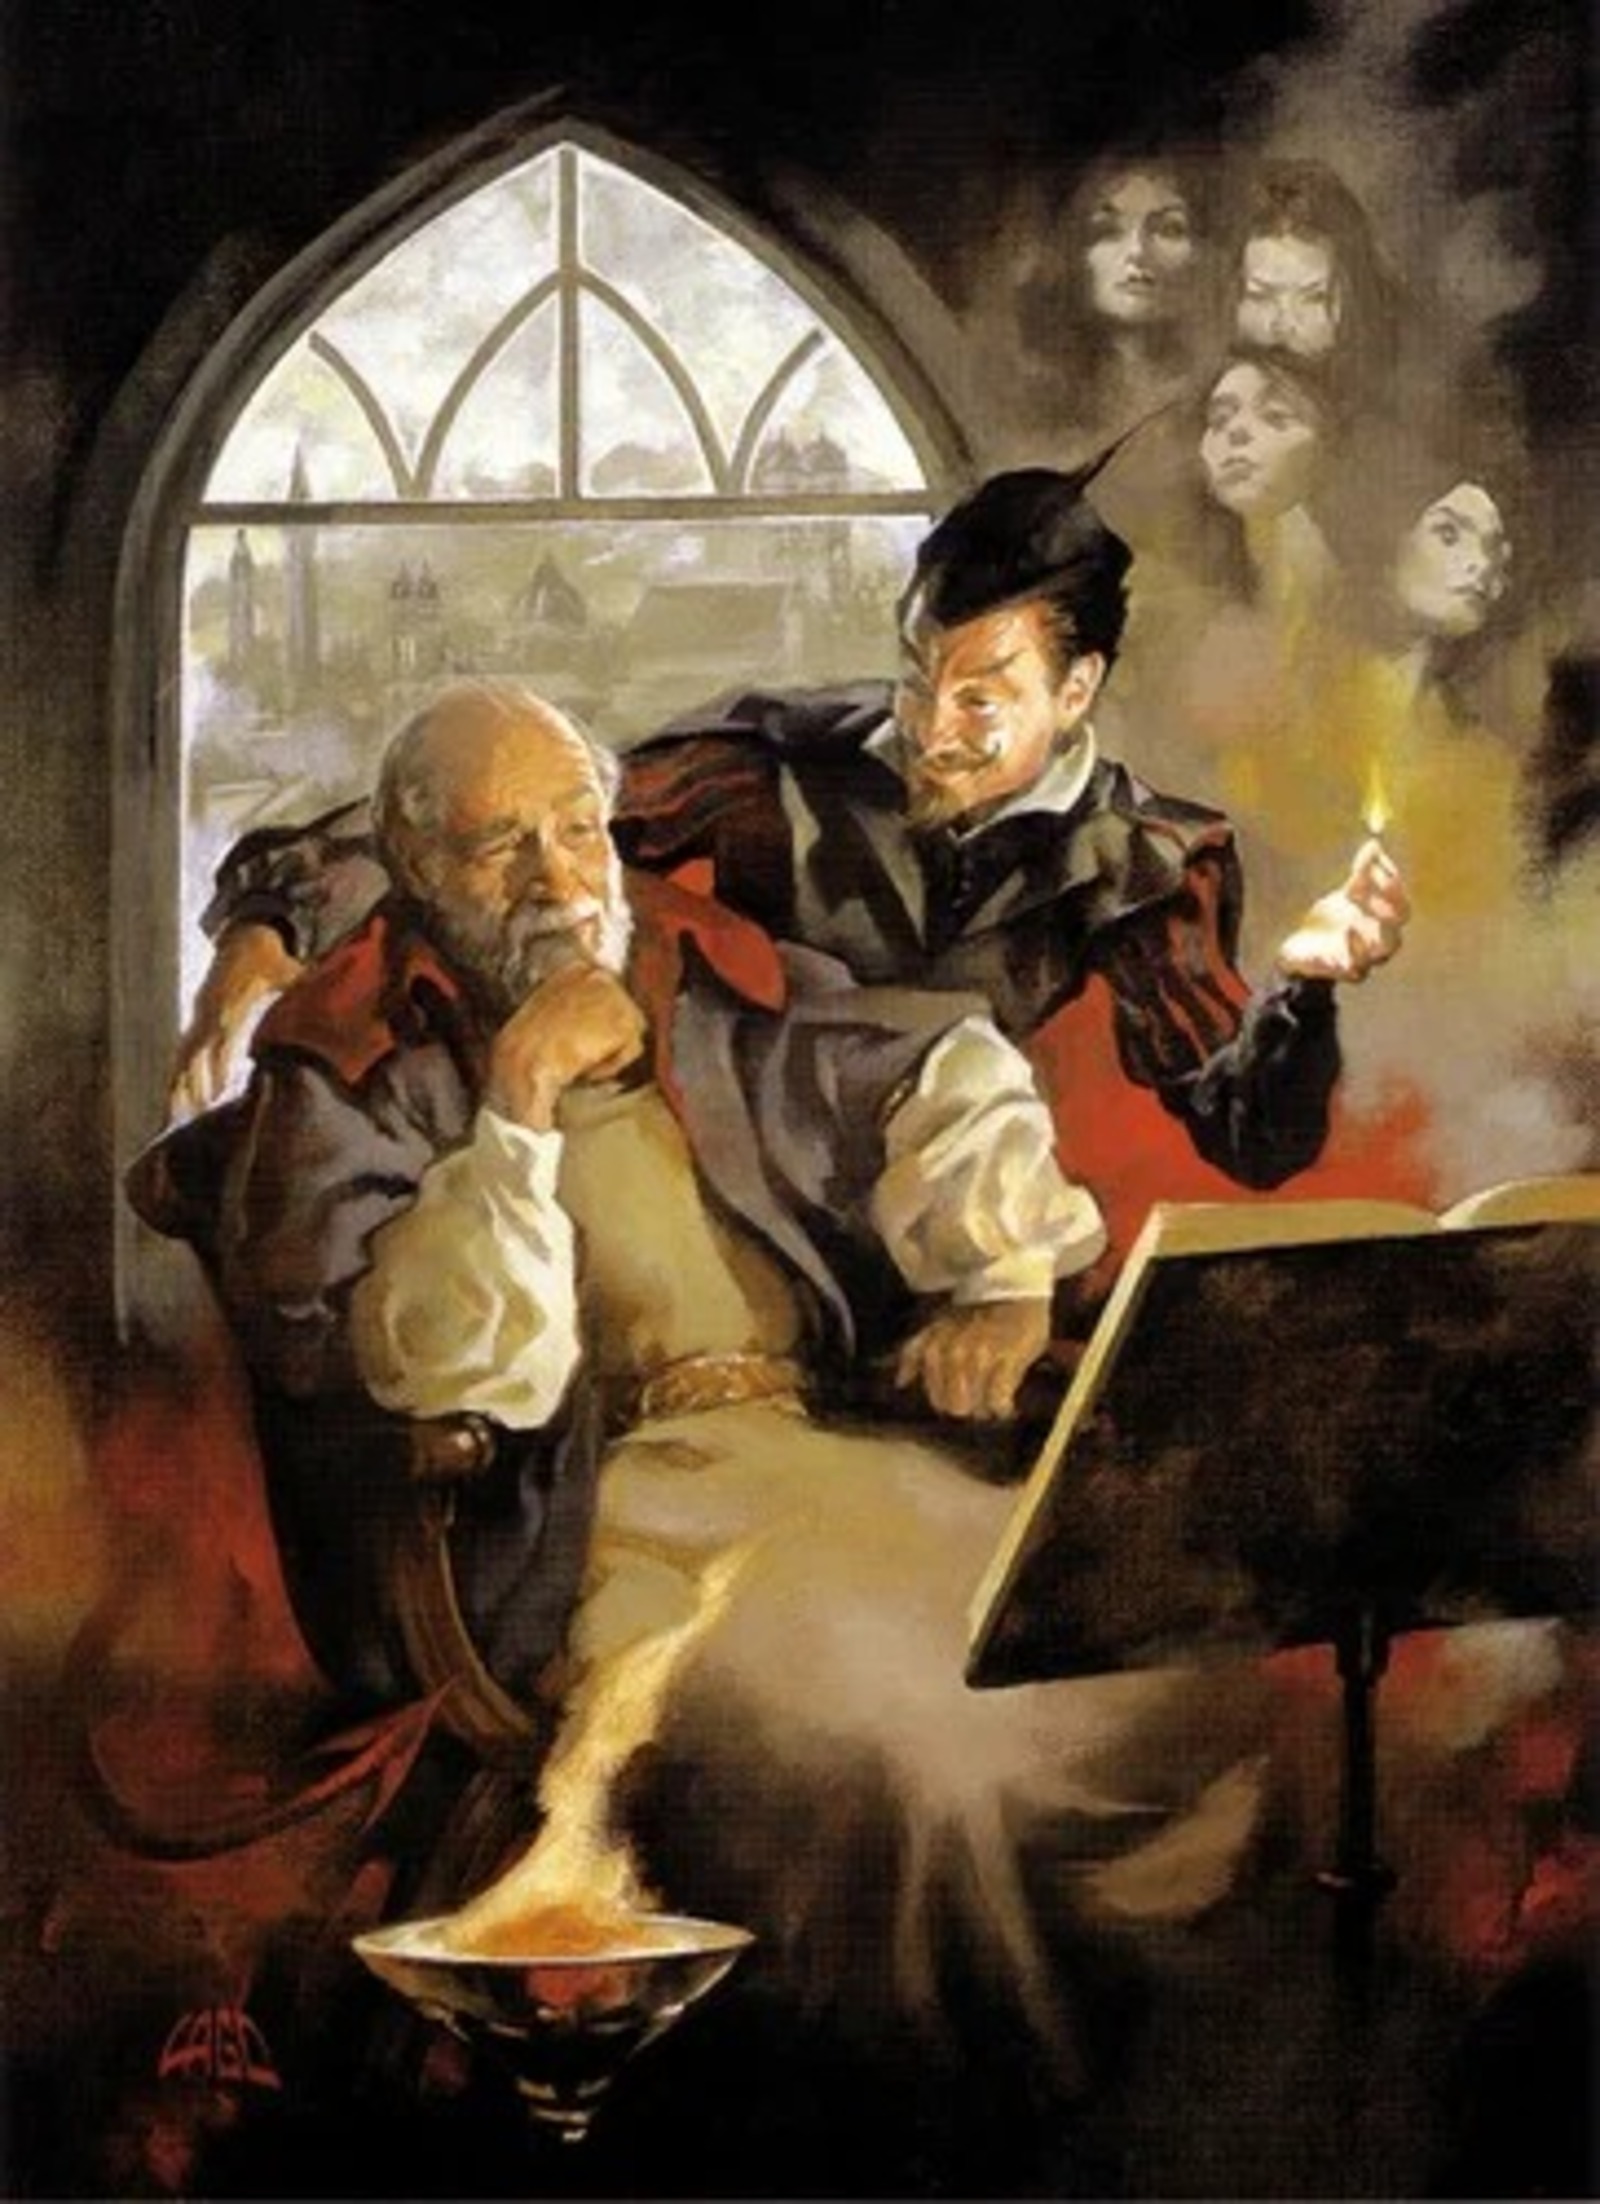 Мефистофель искушает Фауста. Картина Рея Лаго